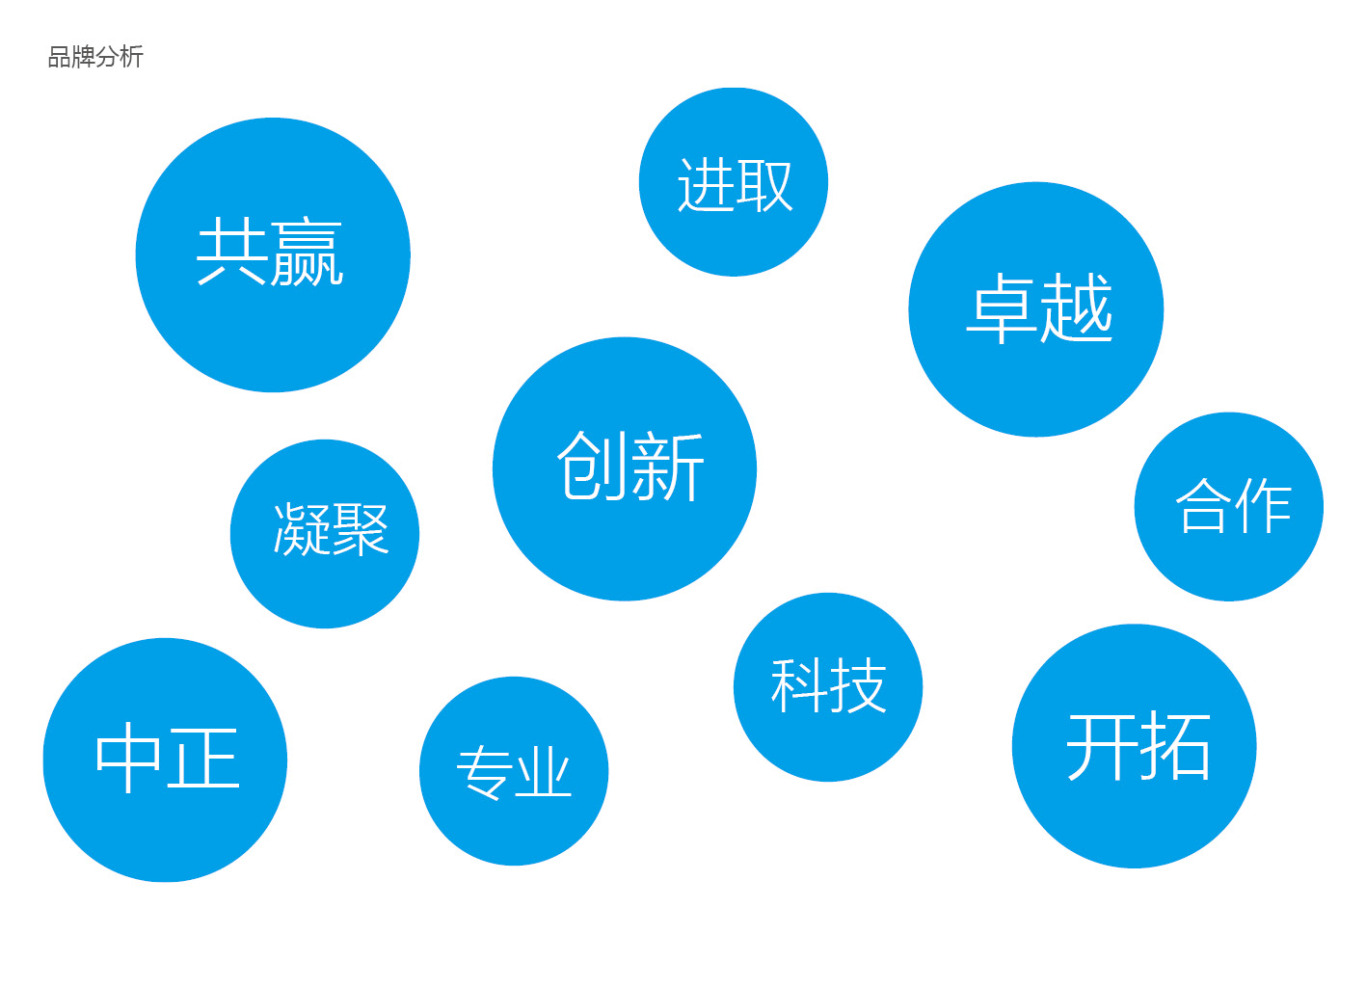 北科永丰资产管理公司品牌形象设计图1